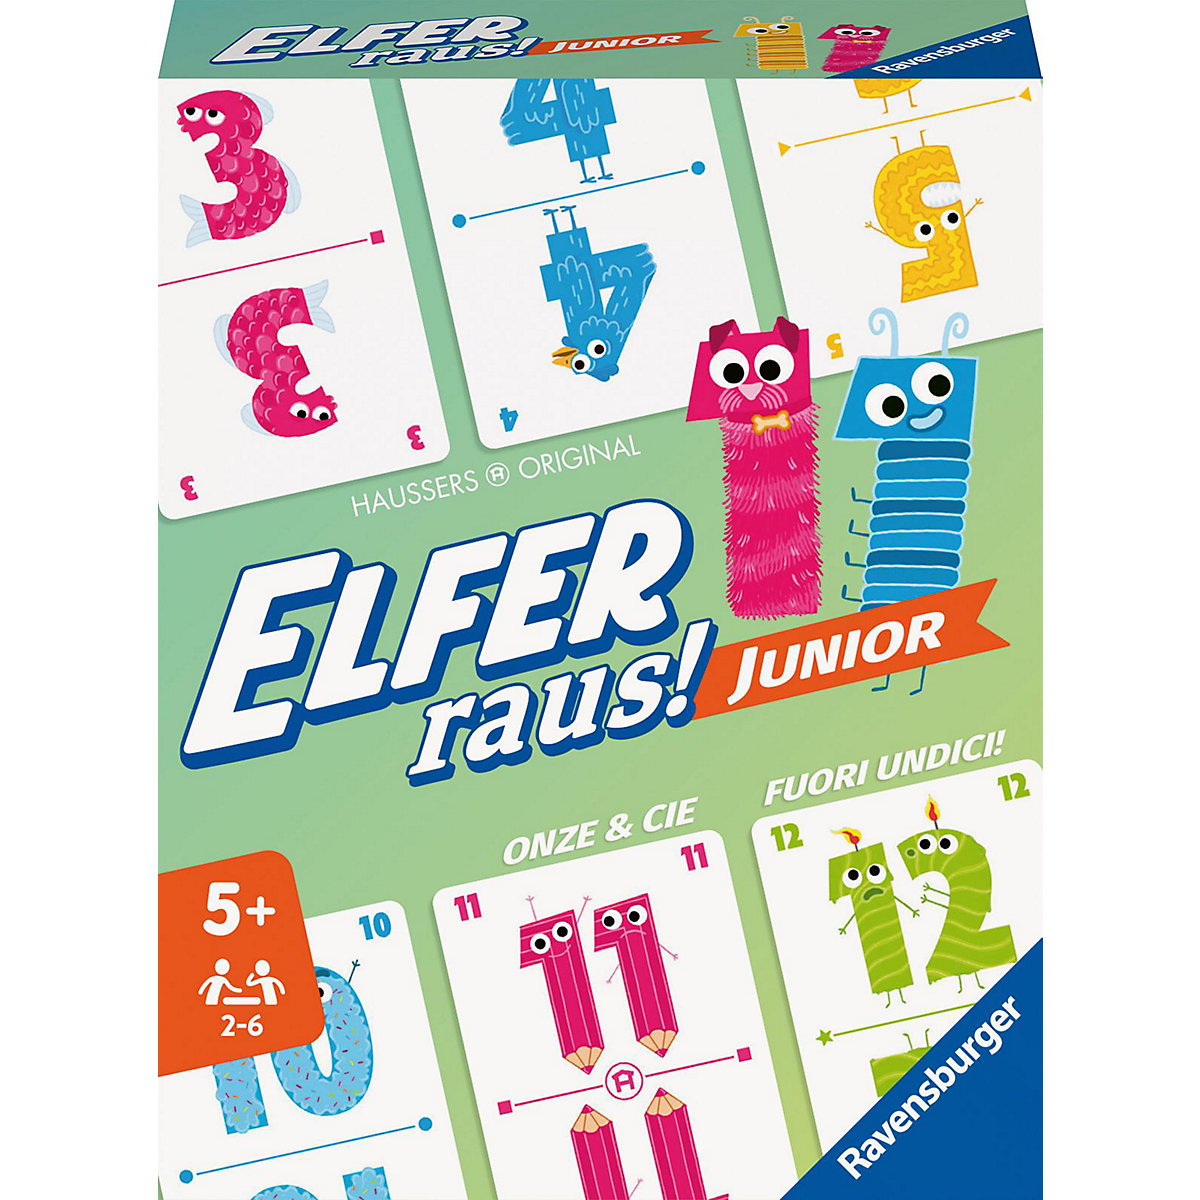 Ravensburger 20947 Elfer Raus! Junior Kartenspiel 2 6 Spieler Spiel ab 5 Jahren für Kinder und Erwachsene Zahlenraum 1-20